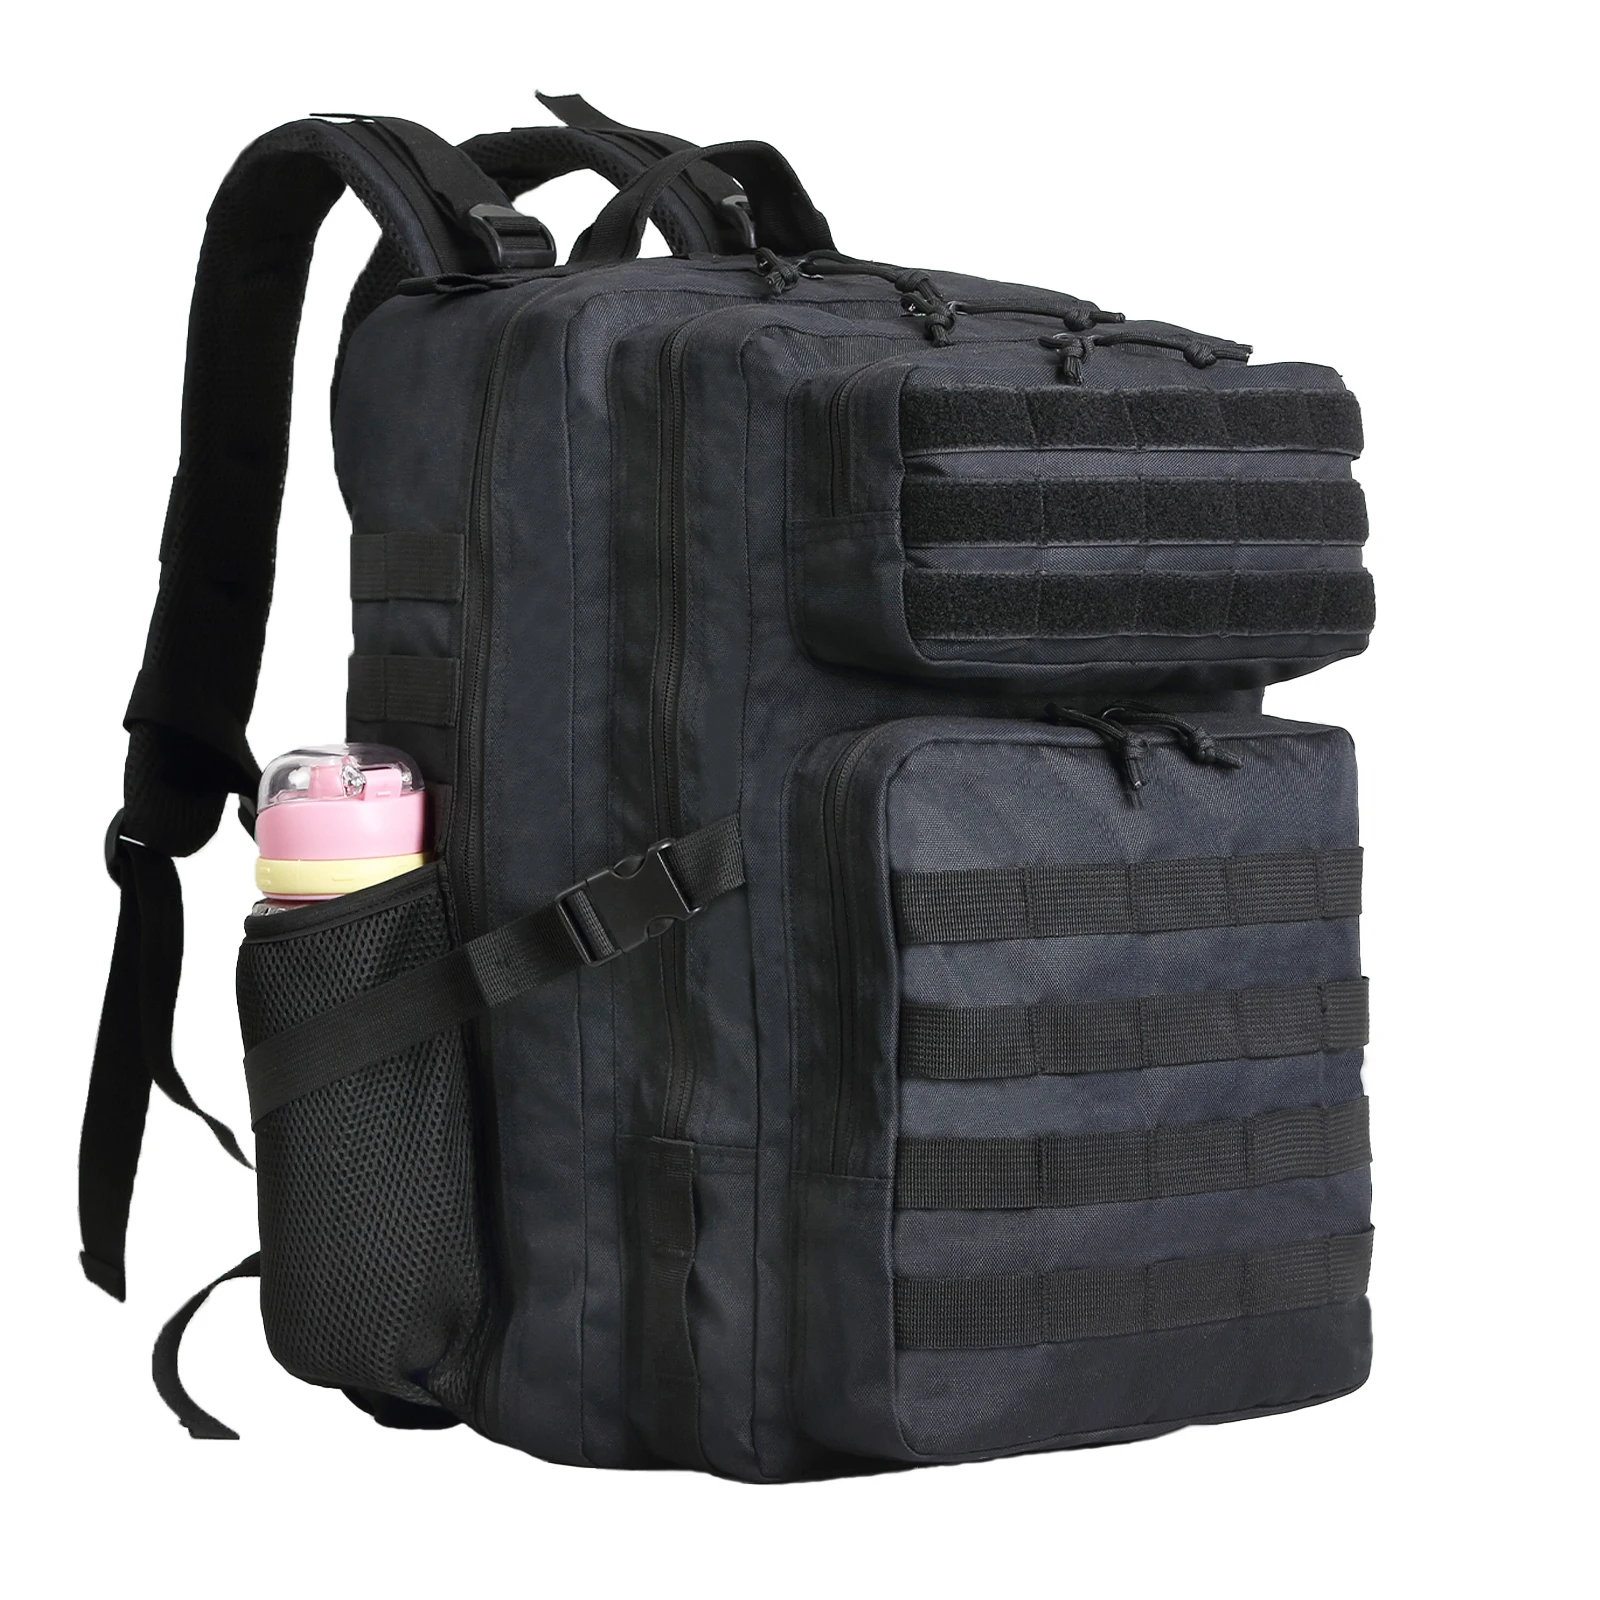 SYZM 50L or 30L Tactical Backpack Bag Hunting MOLLE Backpack for Men Outdoor Hiking Rucksack Fishing Bag with Bottle Holder